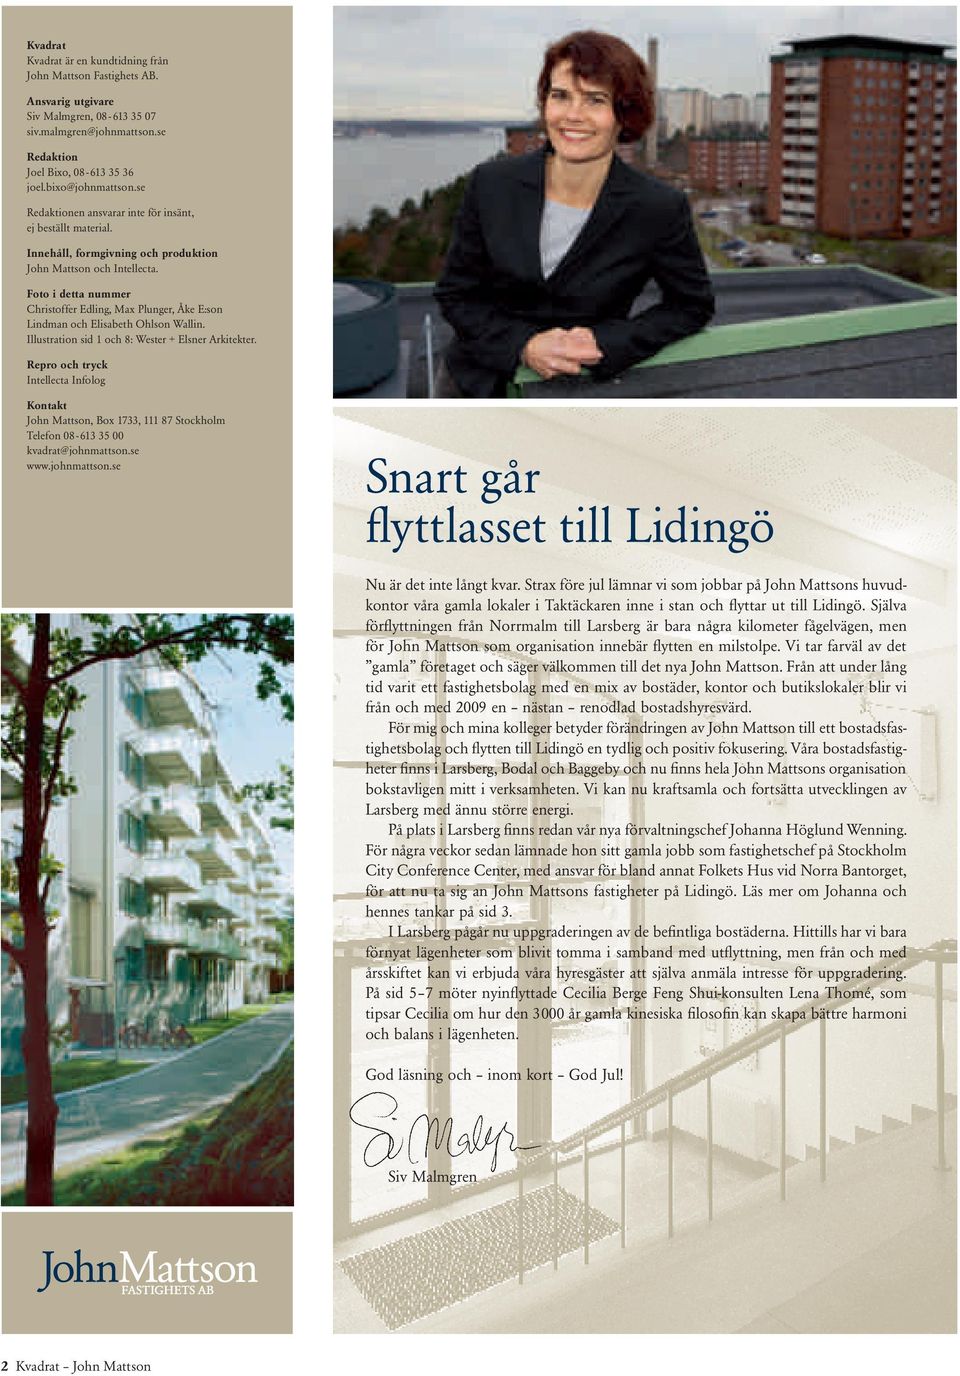 Foto i detta nummer Christoffer Edling, Max Plunger, Åke E:son Lindman och Elisabeth Ohlson Wallin. Illustration sid 1 och 8: Wester + Elsner Arkitekter.